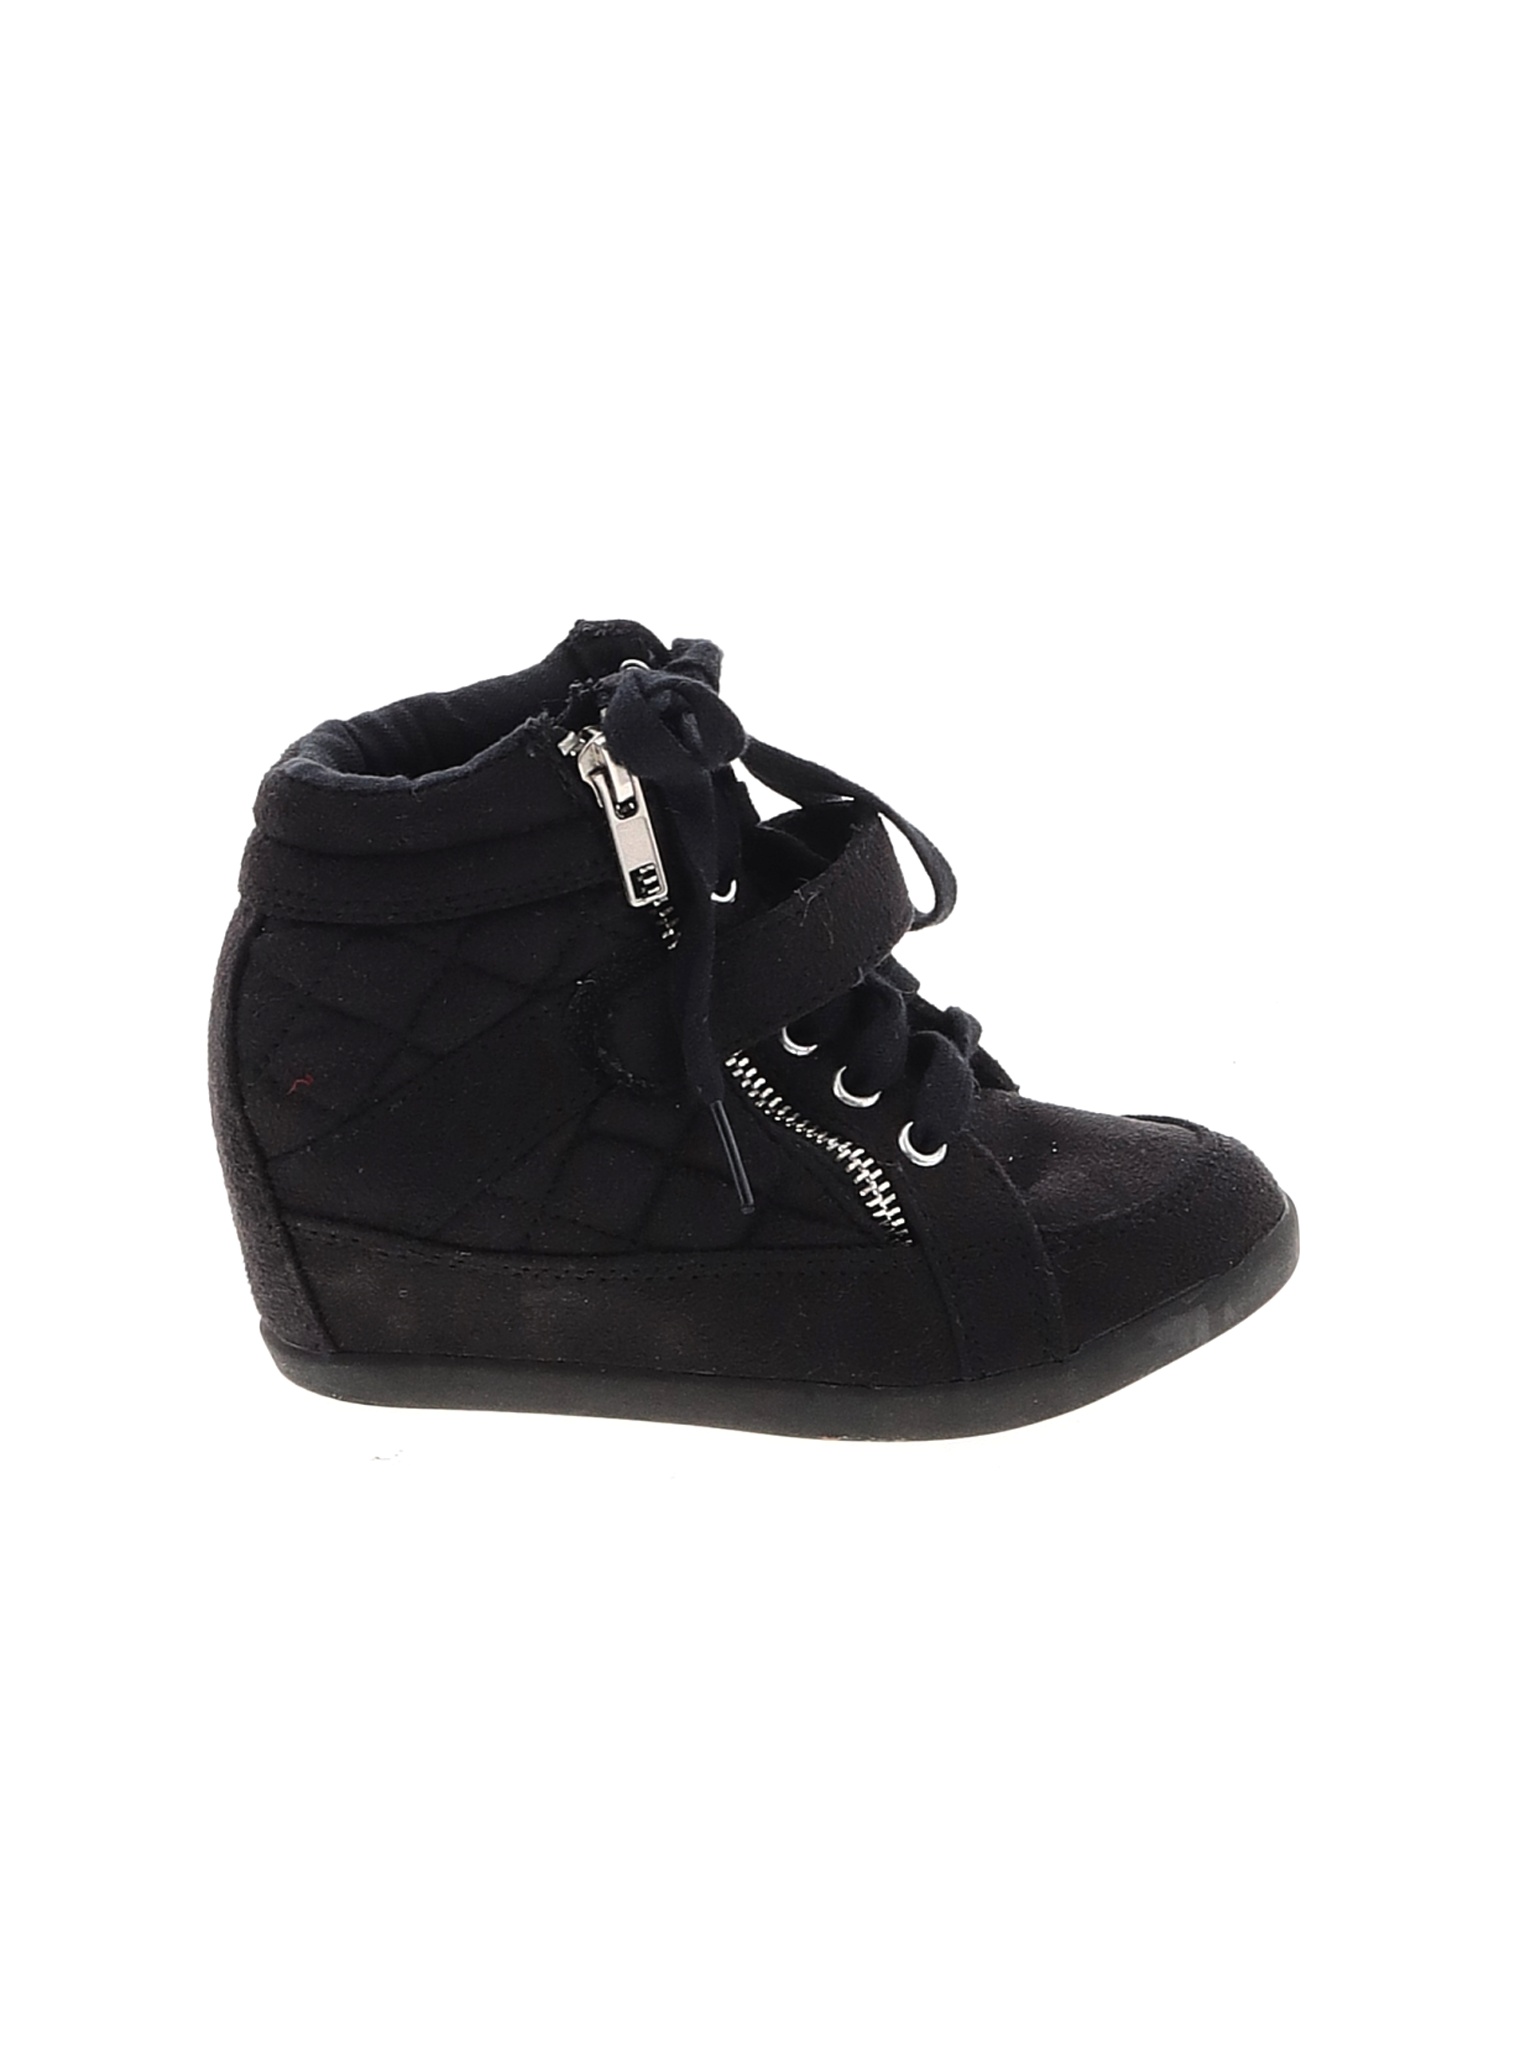 Justice Girls Black Sneakers 12 | eBay